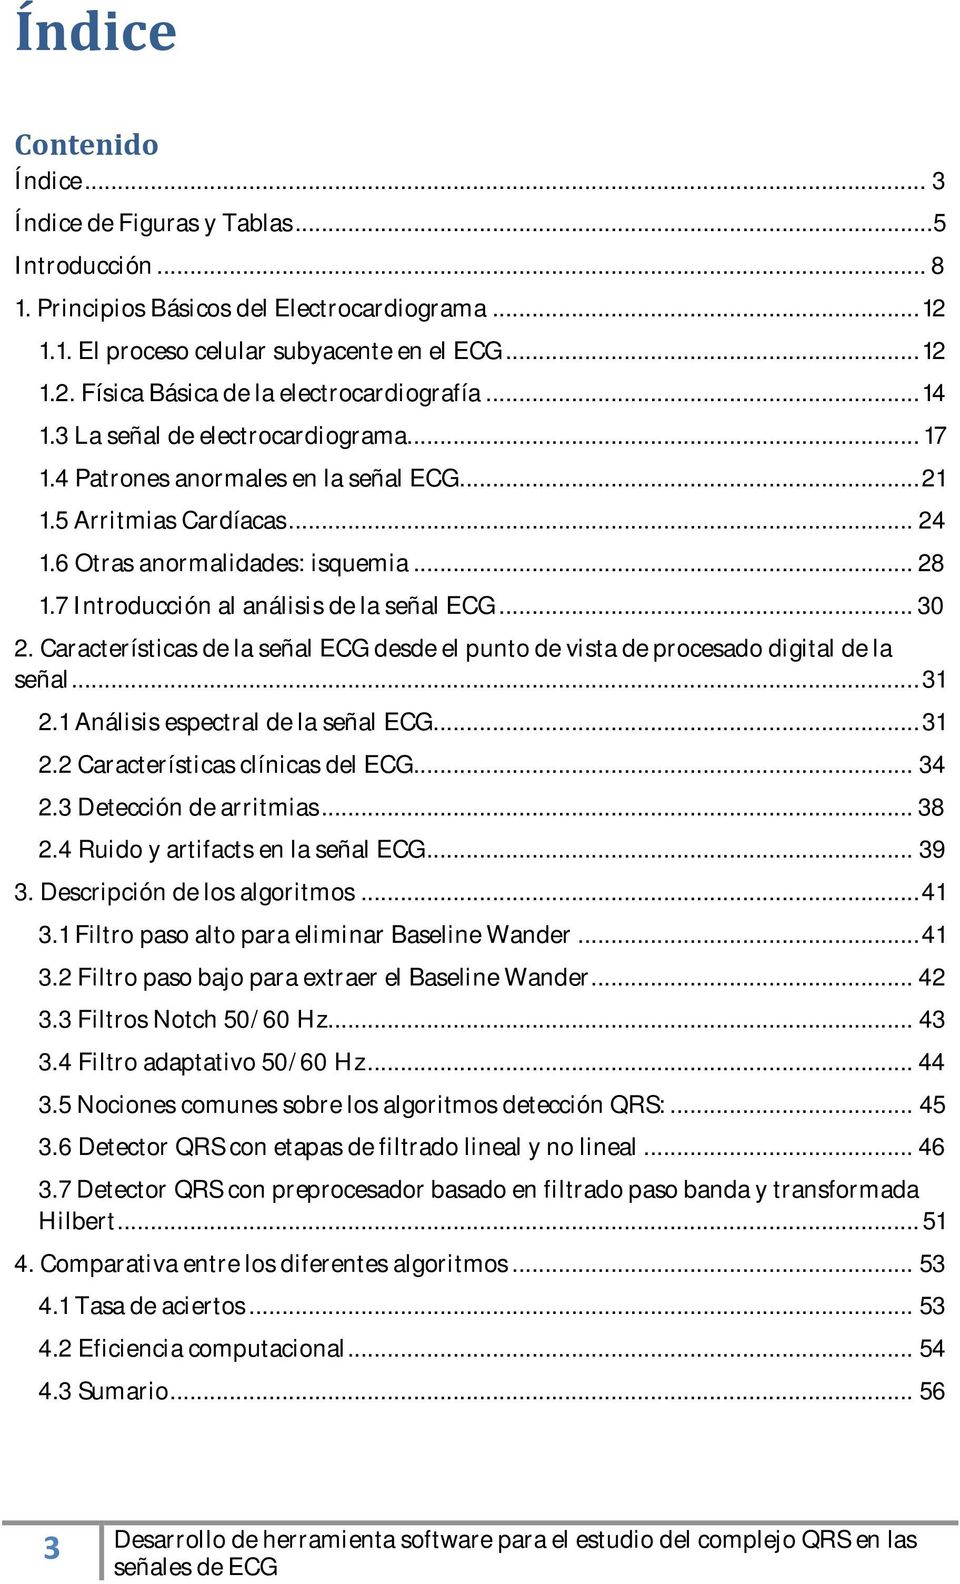 7 Introducción al análisis de la señal ECG... 30 2. Características de la señal ECG desde el punto de vista de procesado digital de la señal... 31 2.1 Análisis espectral de la señal ECG... 31 2.2 Características clínicas del ECG.